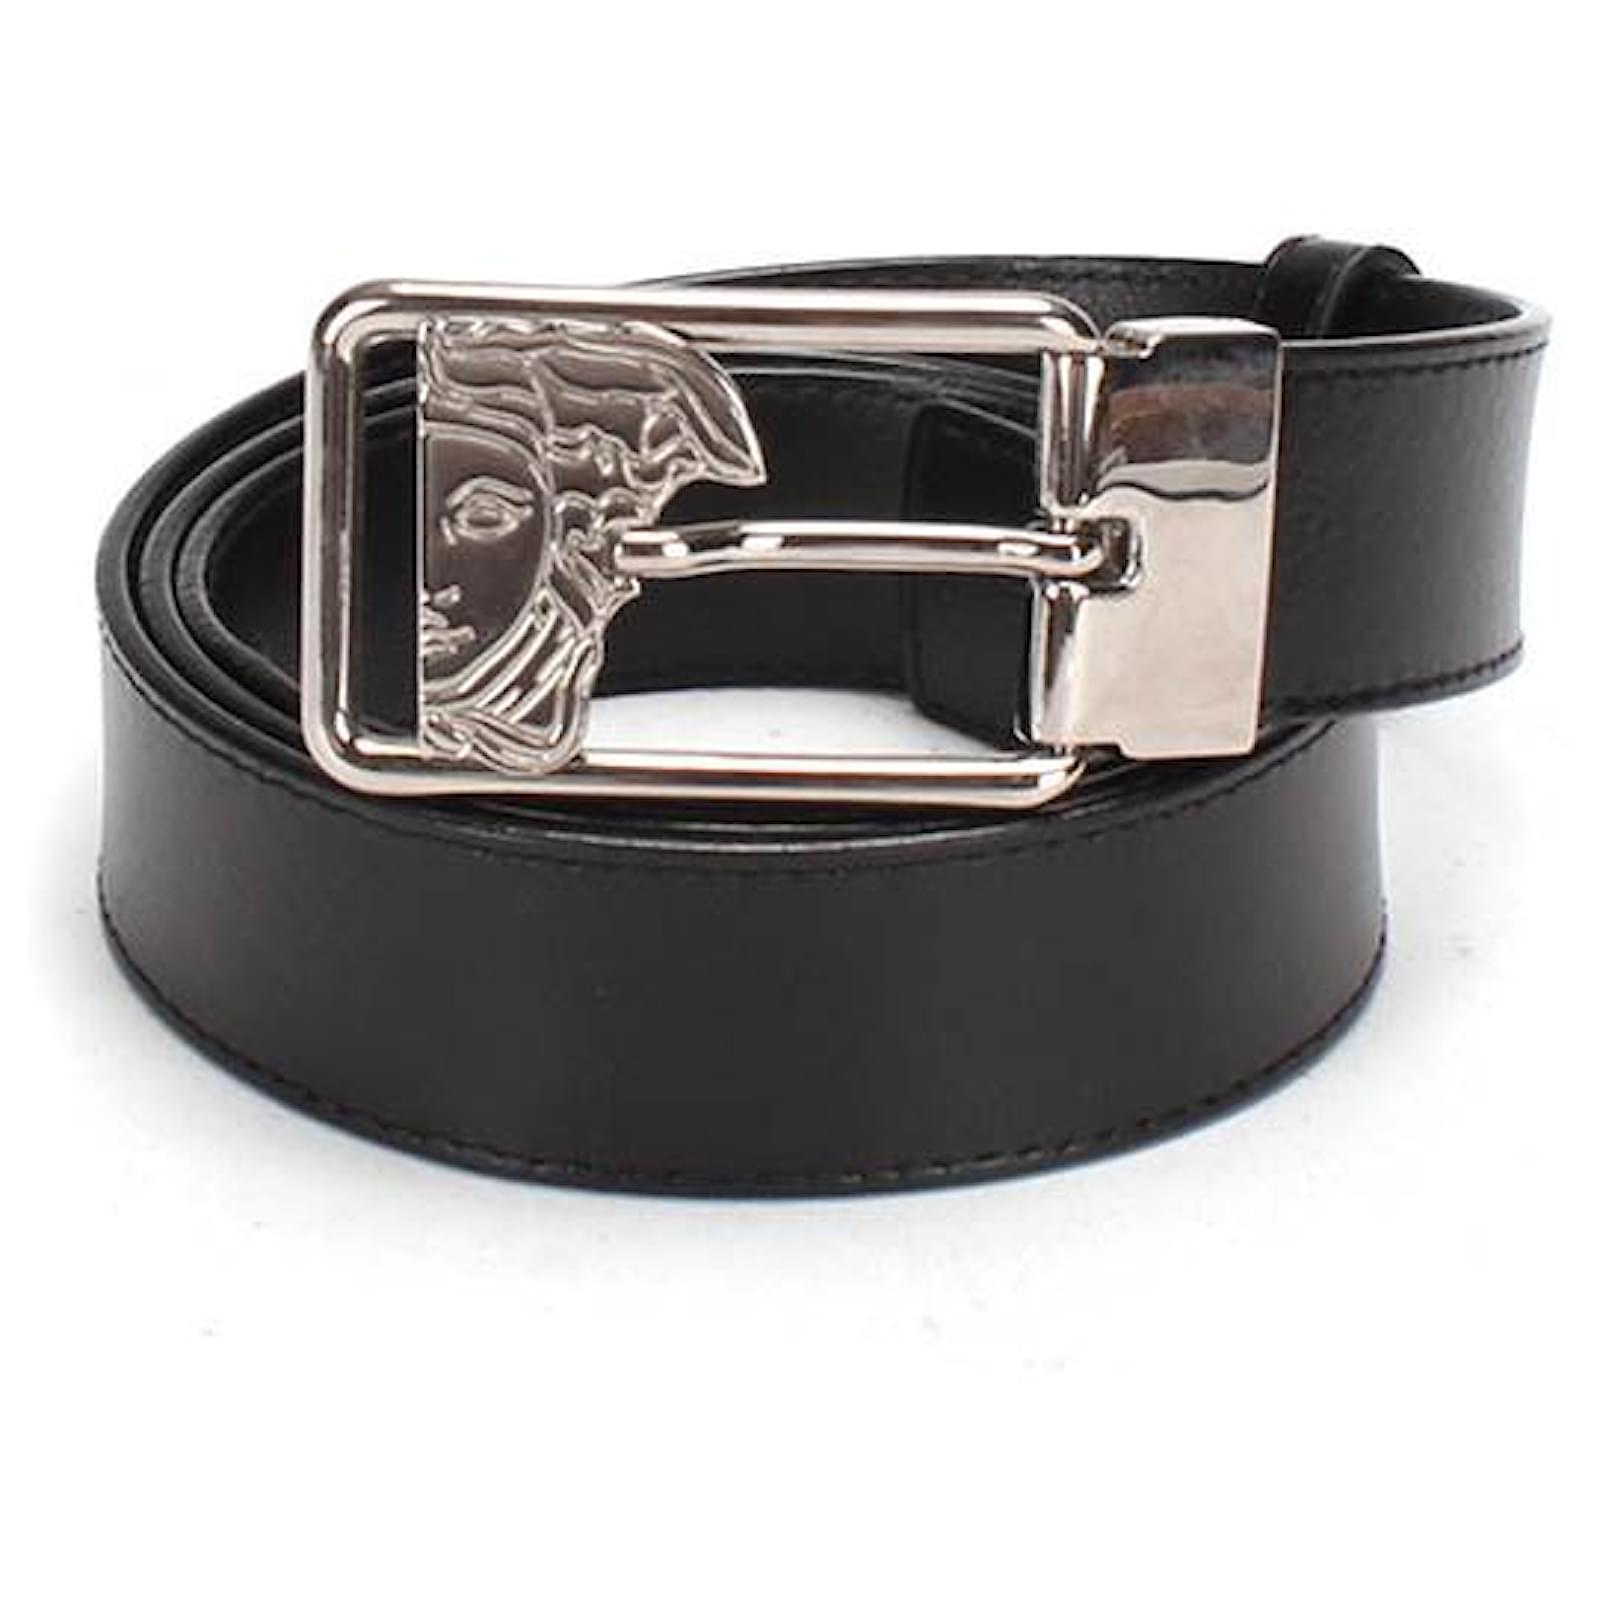 versace belt black